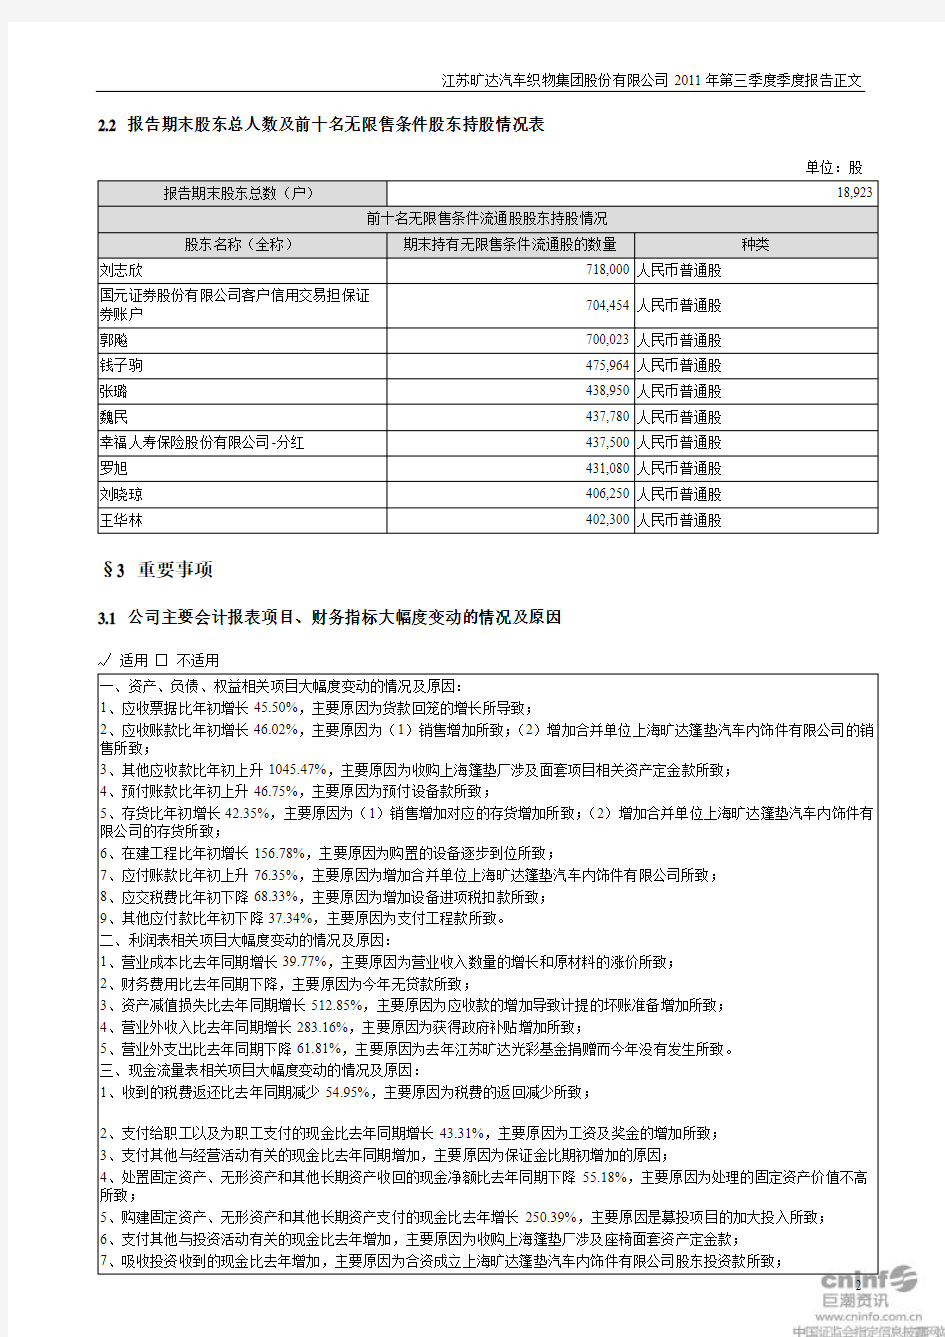 江苏旷达汽车织物集团股份有限公司2011年第三季度季度报告正文